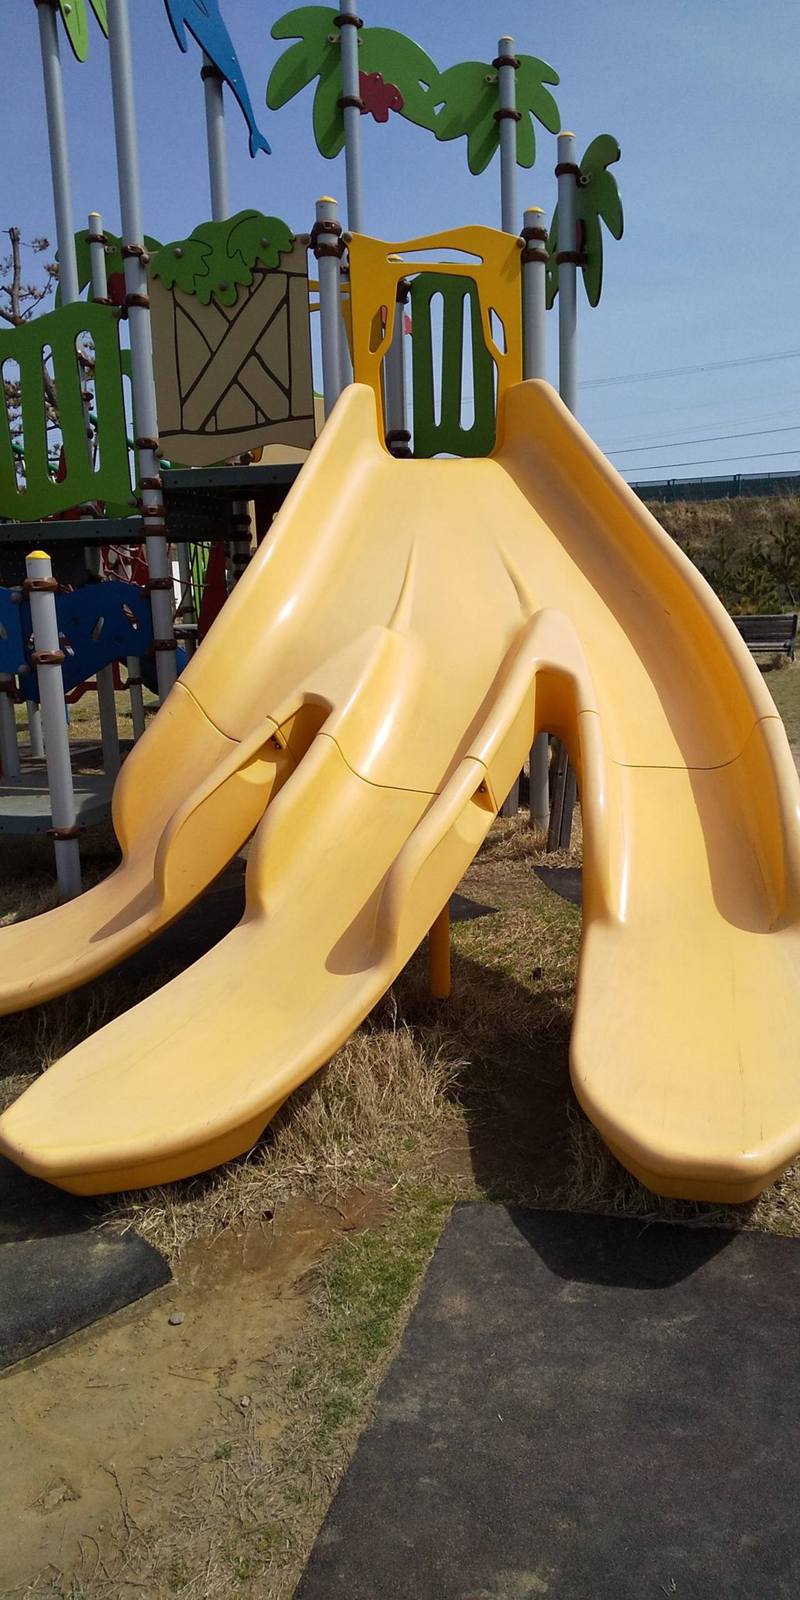 日本1名母亲指出，公园「香蕉滑梯」暗藏危险，一旦小朋友滑下时犹豫不决，胯下就会撞向分隔位置。「KinokinoTwins」Twitter图片(photo:UDN)